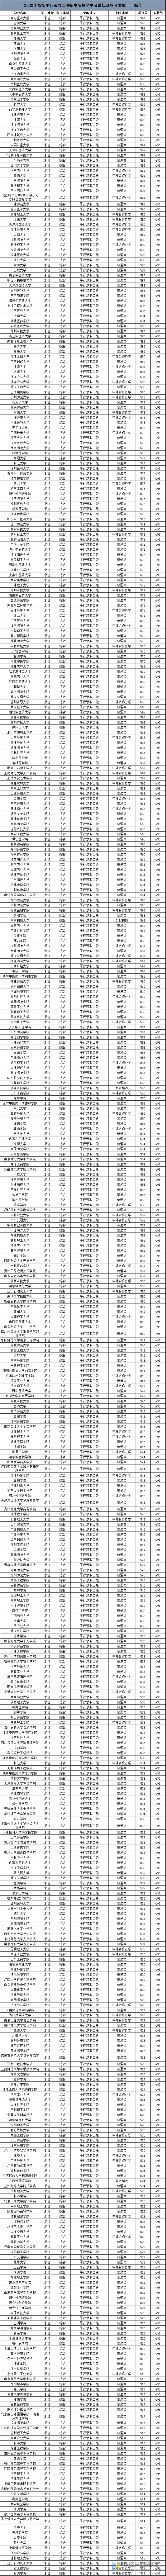 2020年浙江高考平行录取二段招生院校名单及最低录取分数线——综合